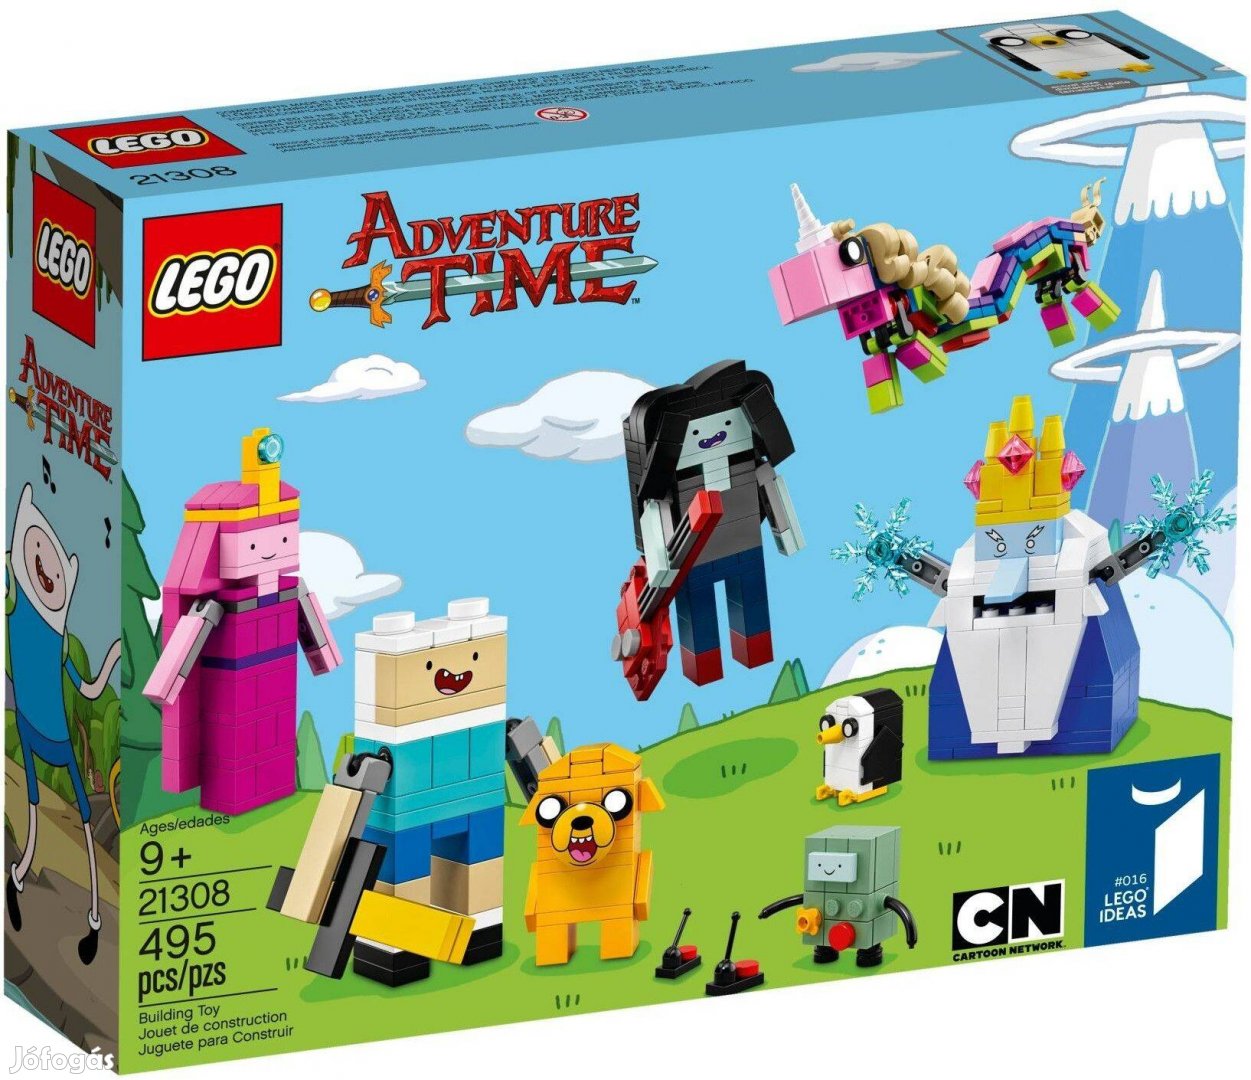 LEGO Ideas 21308 Adventure Time bontatlan, új